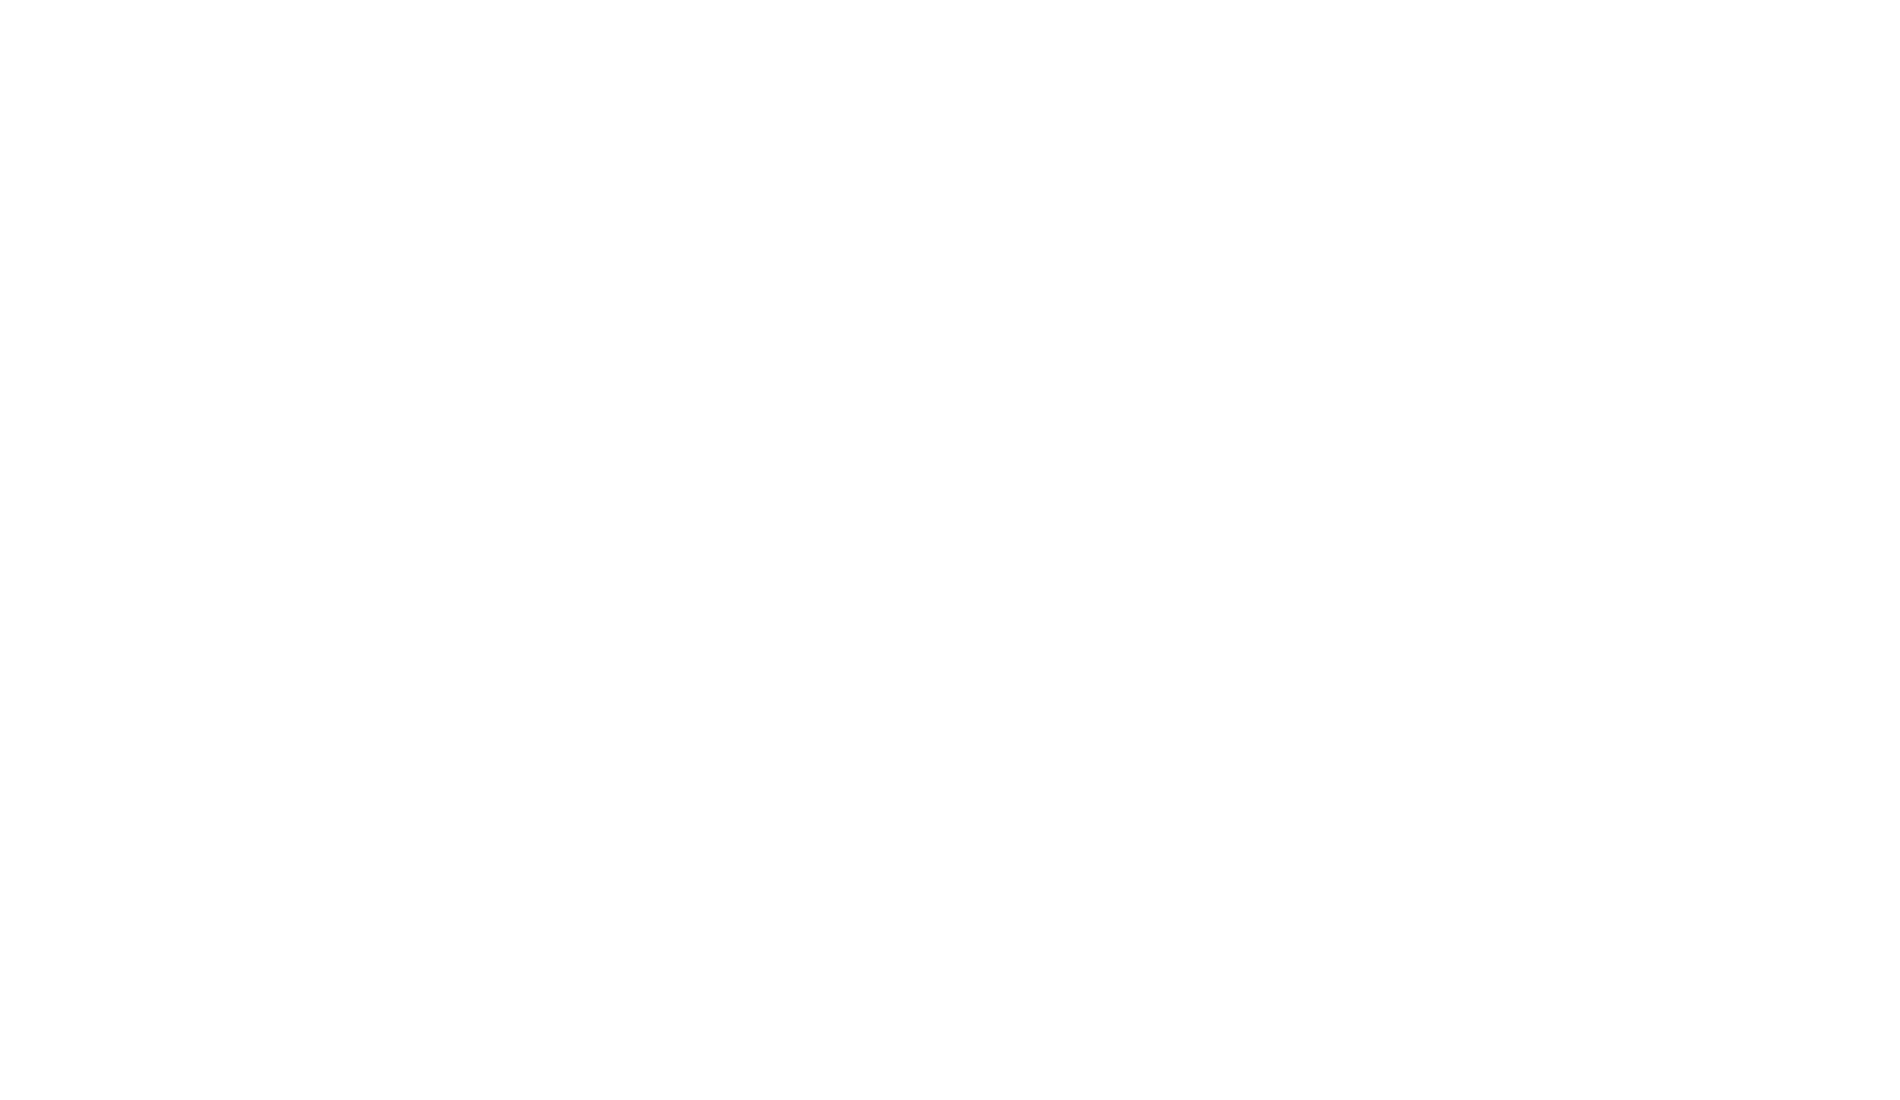 Les Fabricants - logo client ekovrak